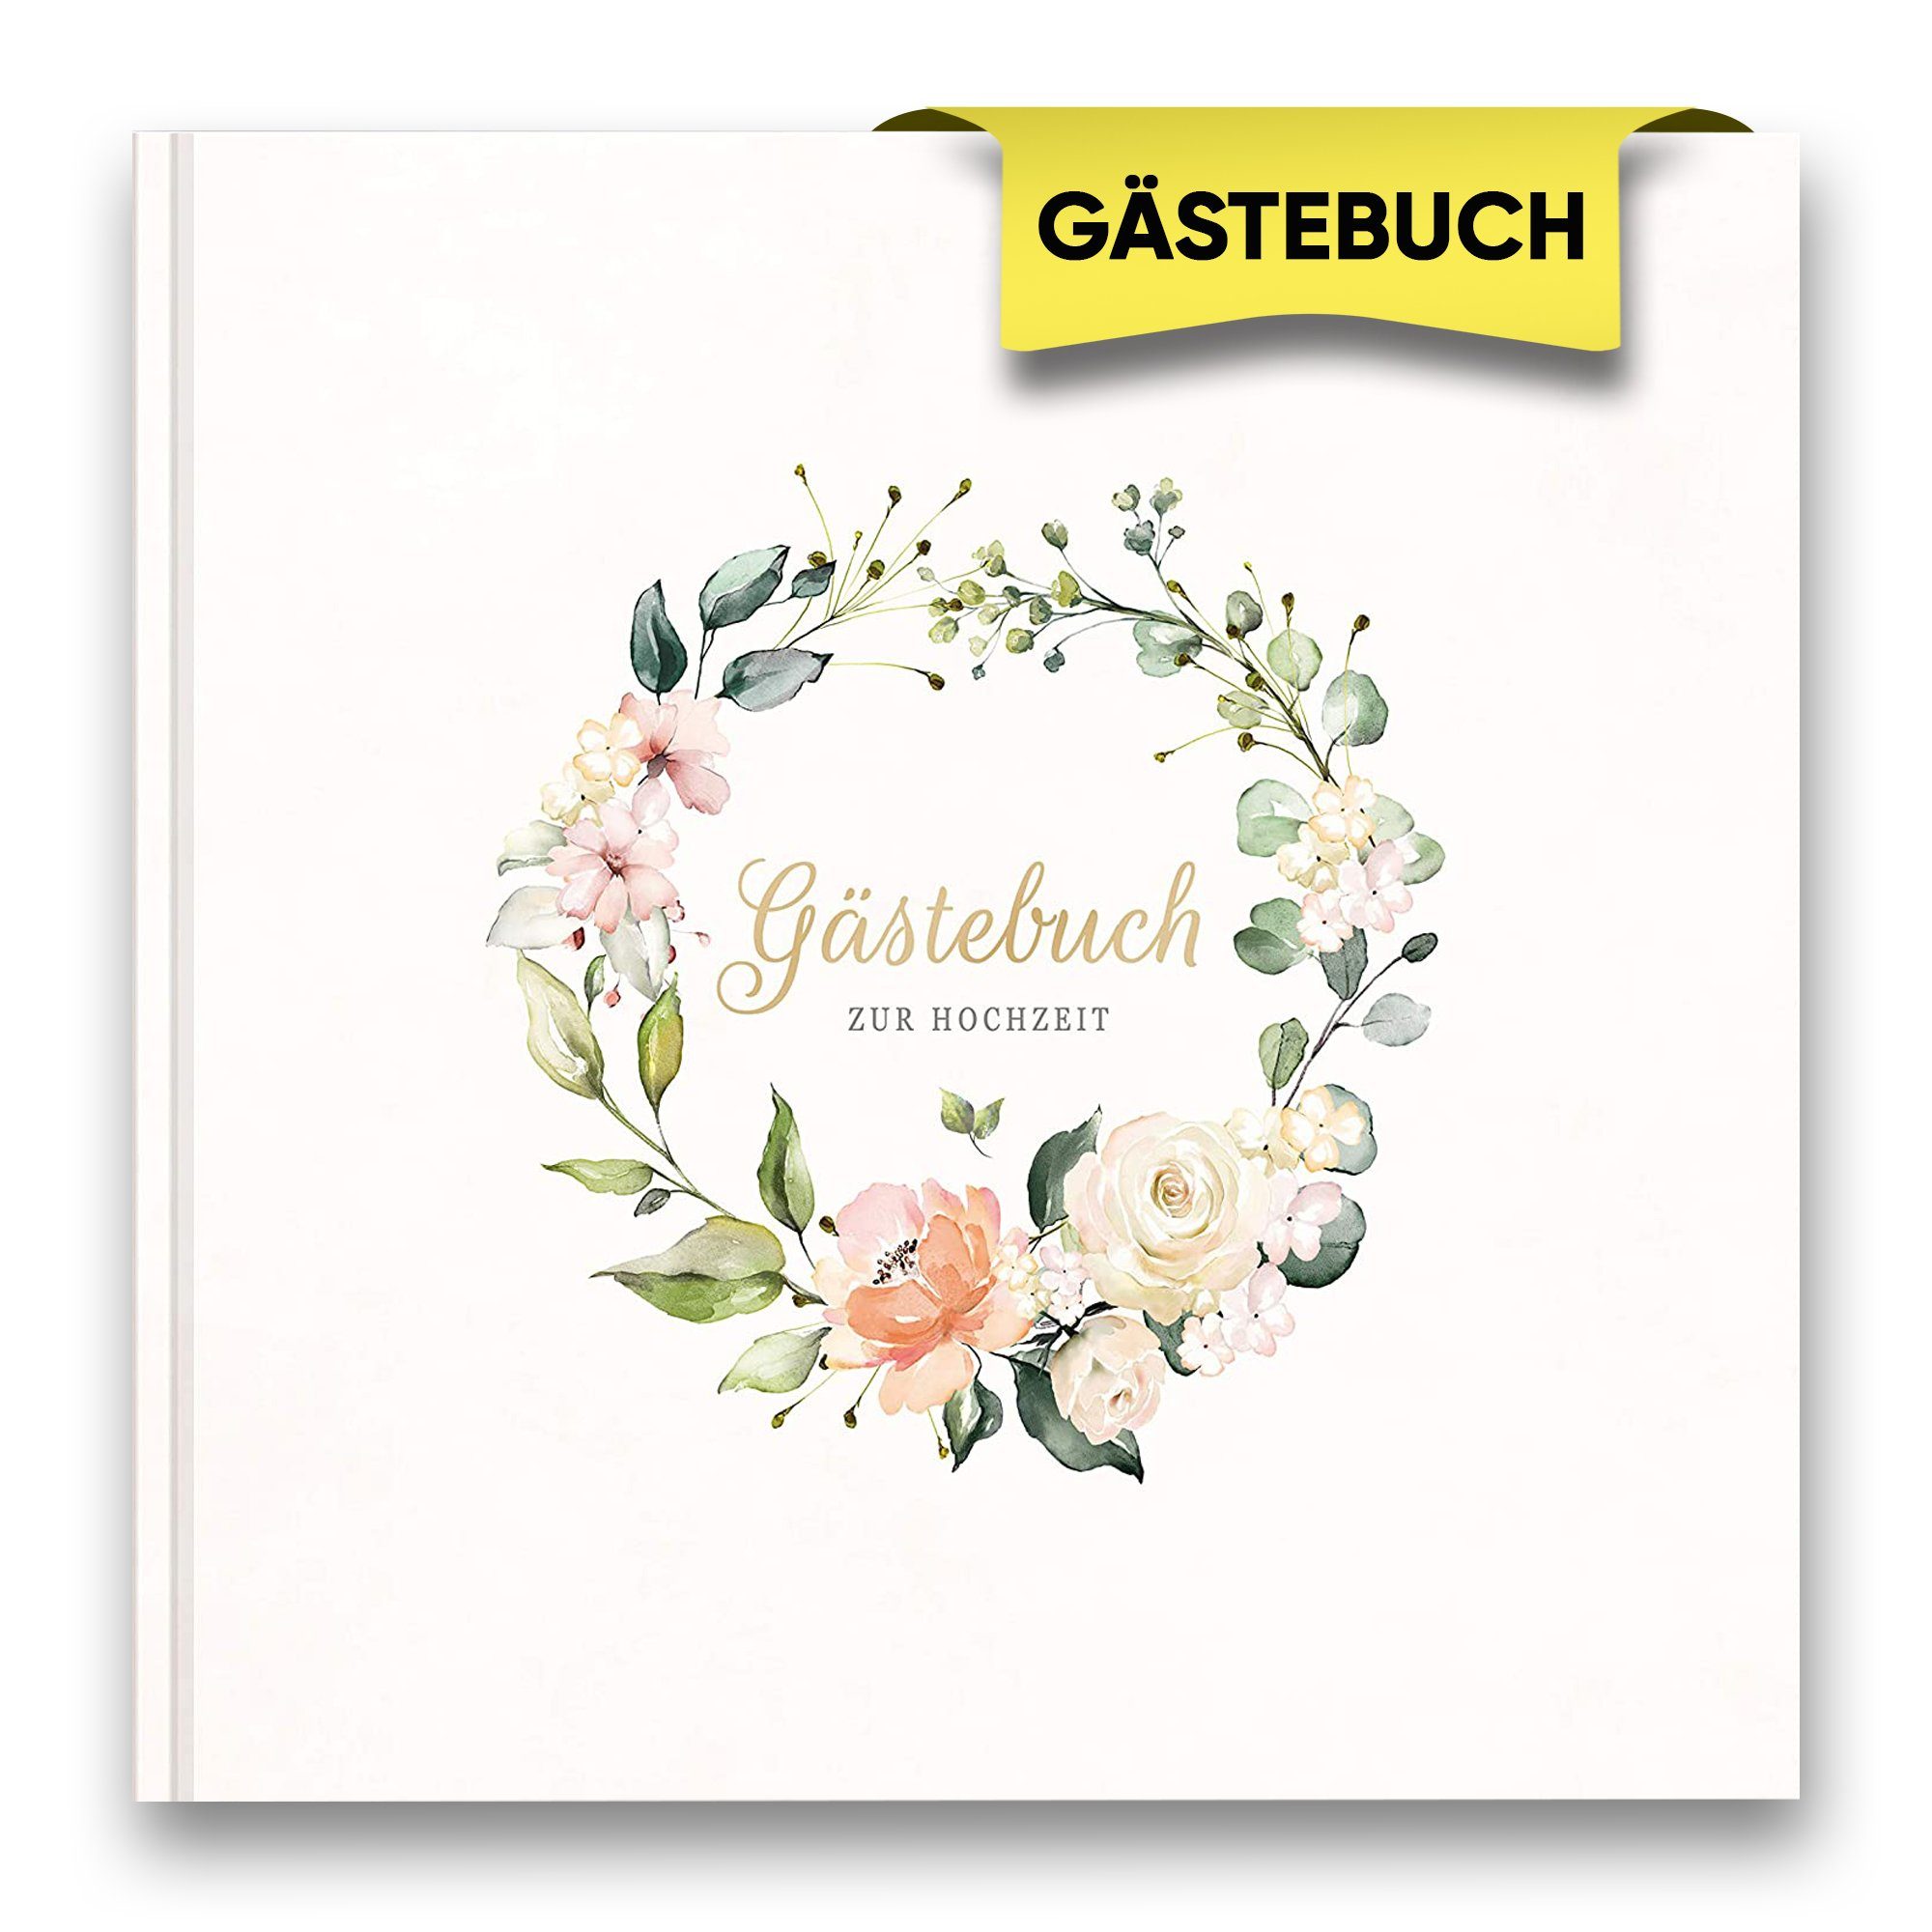 LifeDesign Notizbuch Hochzeitsbuch, Gästebuch zur Hochzeit, 21x21cm, Hardcover, stabile Fadenbindung, edles Papier | Notizbücher